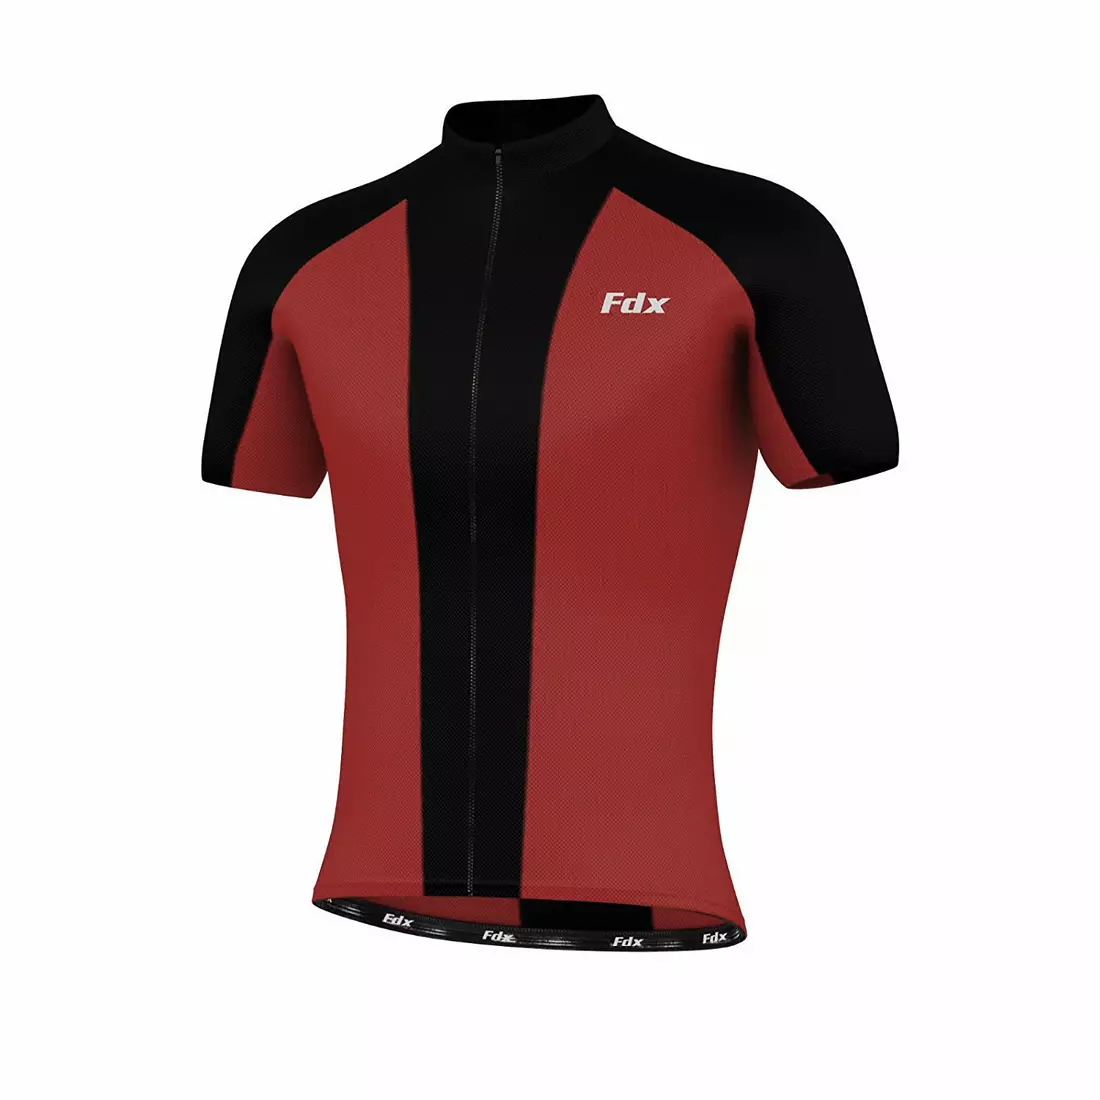 Cyklistický dres FDX 1080, černo-červený